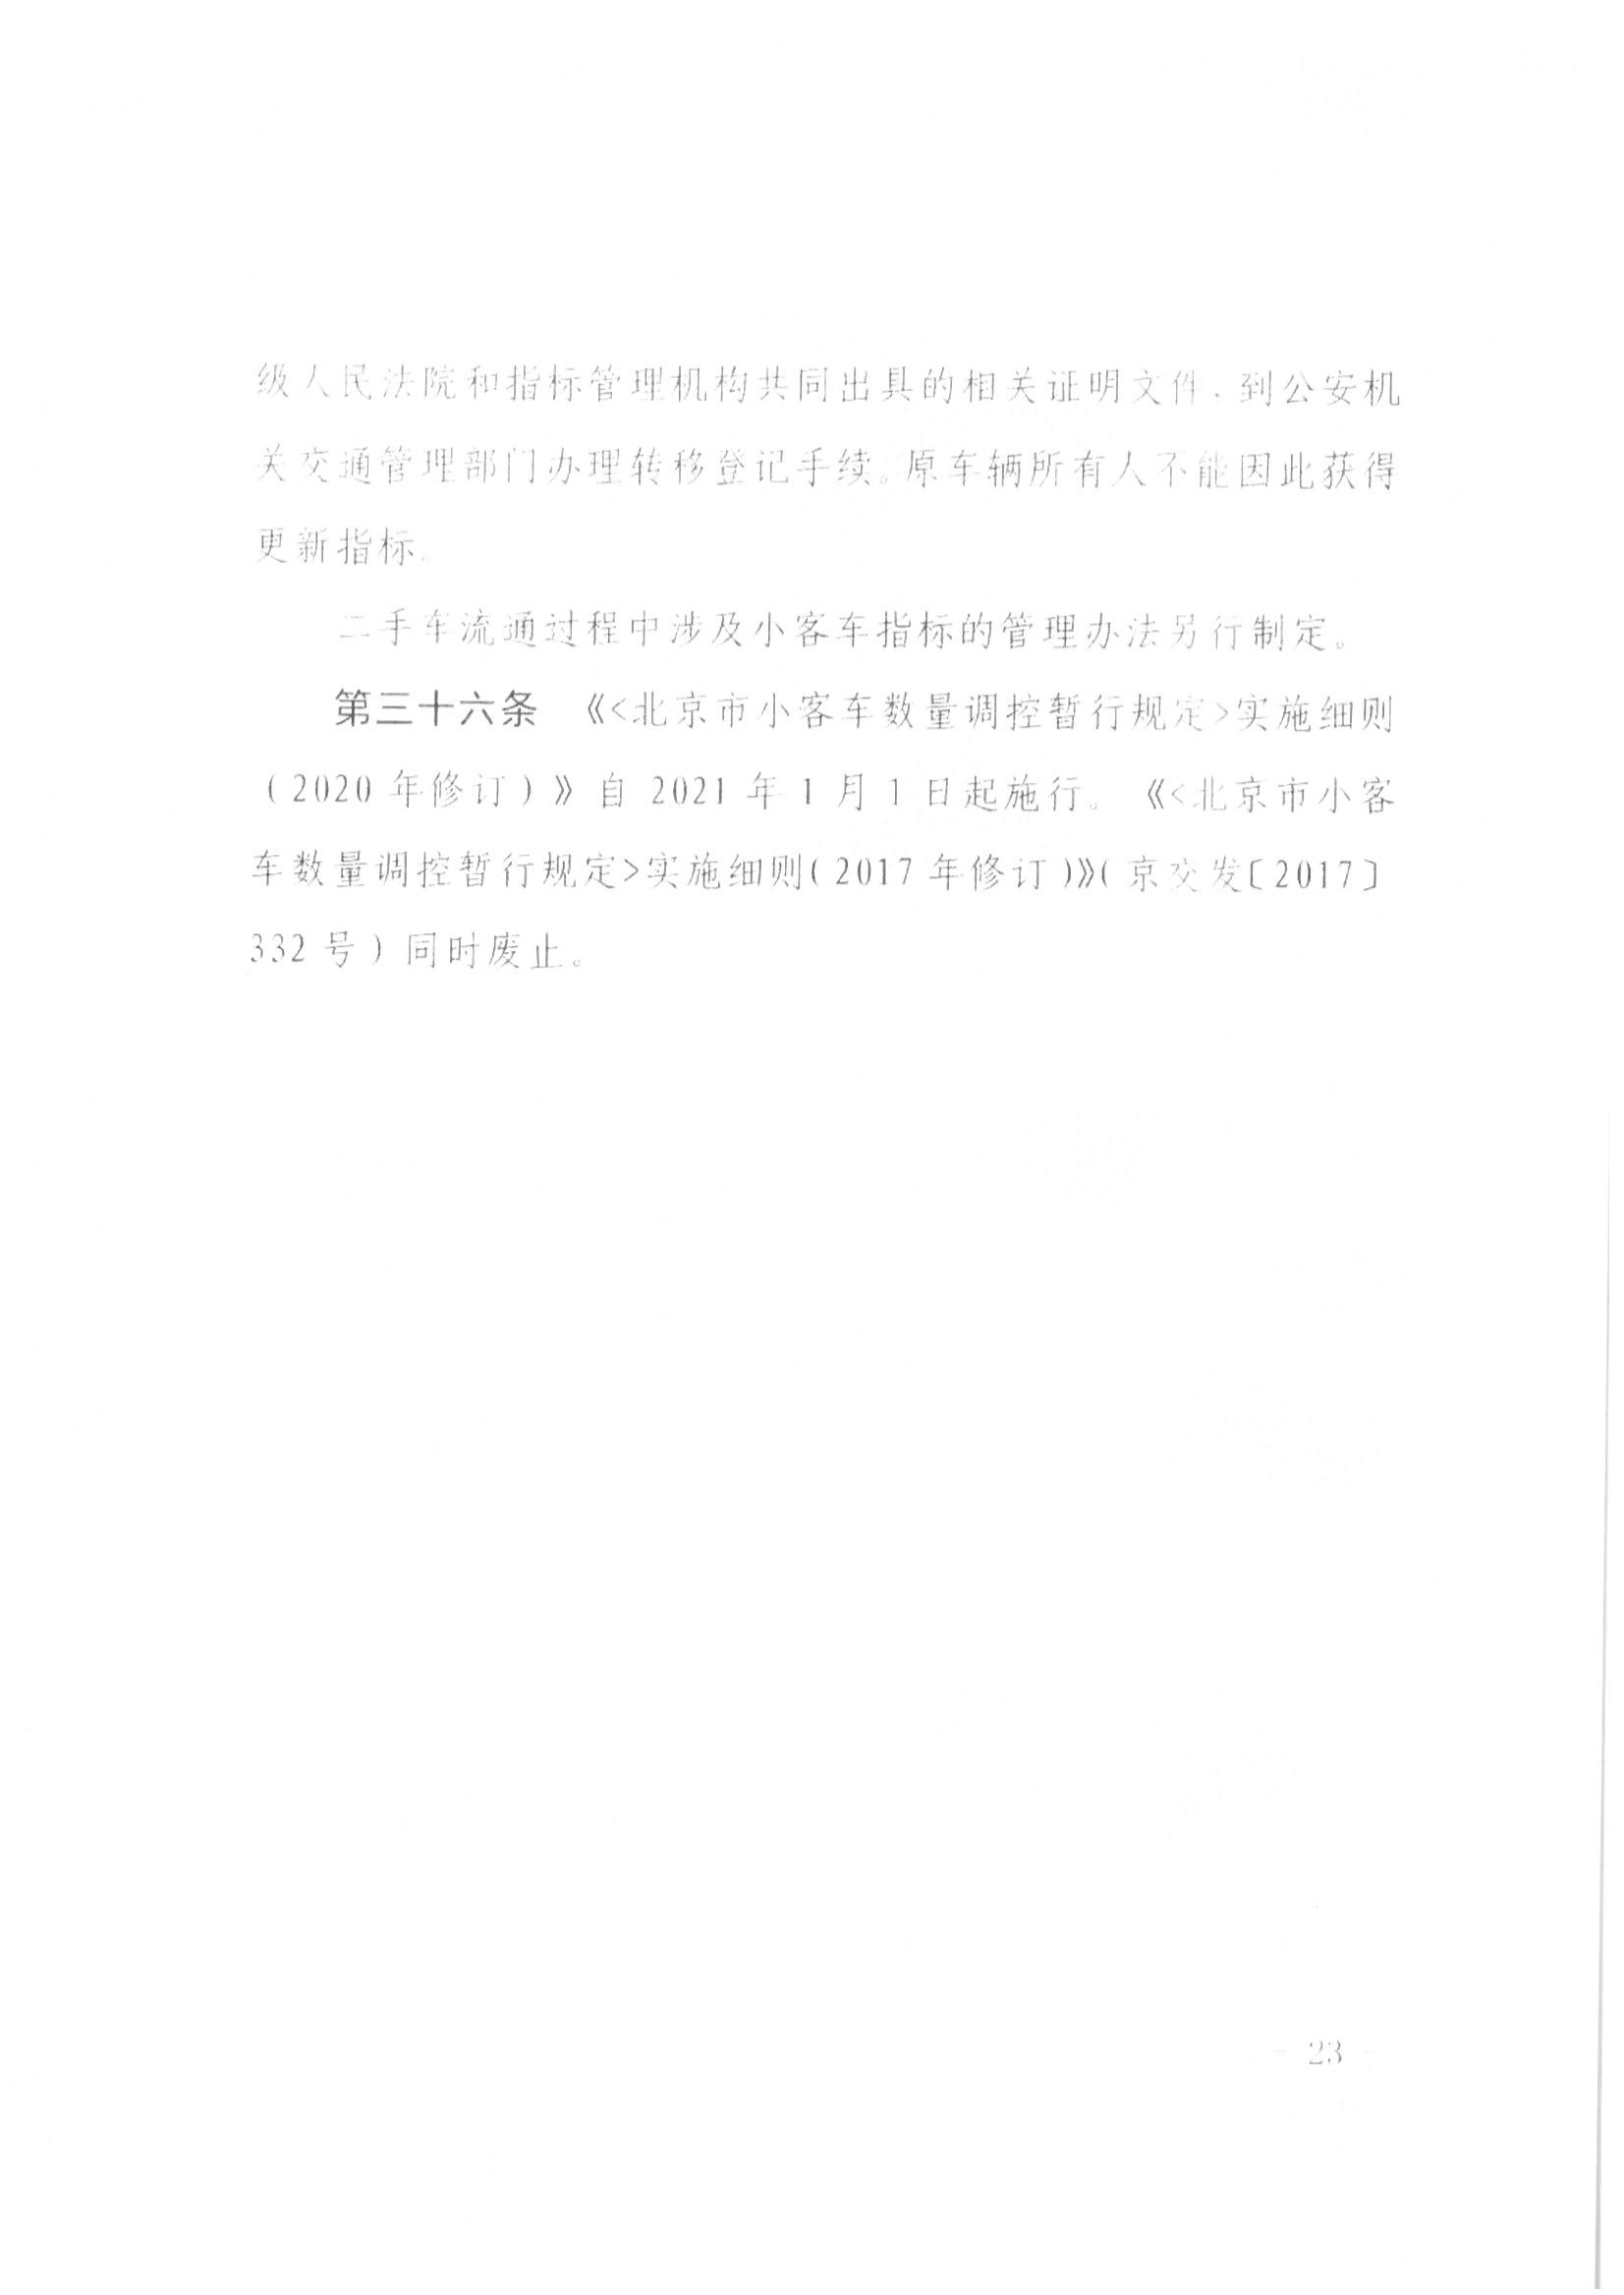 13、北京市公证协会关于印发《北京市公证协会规范执业指引》第13号的通知_45